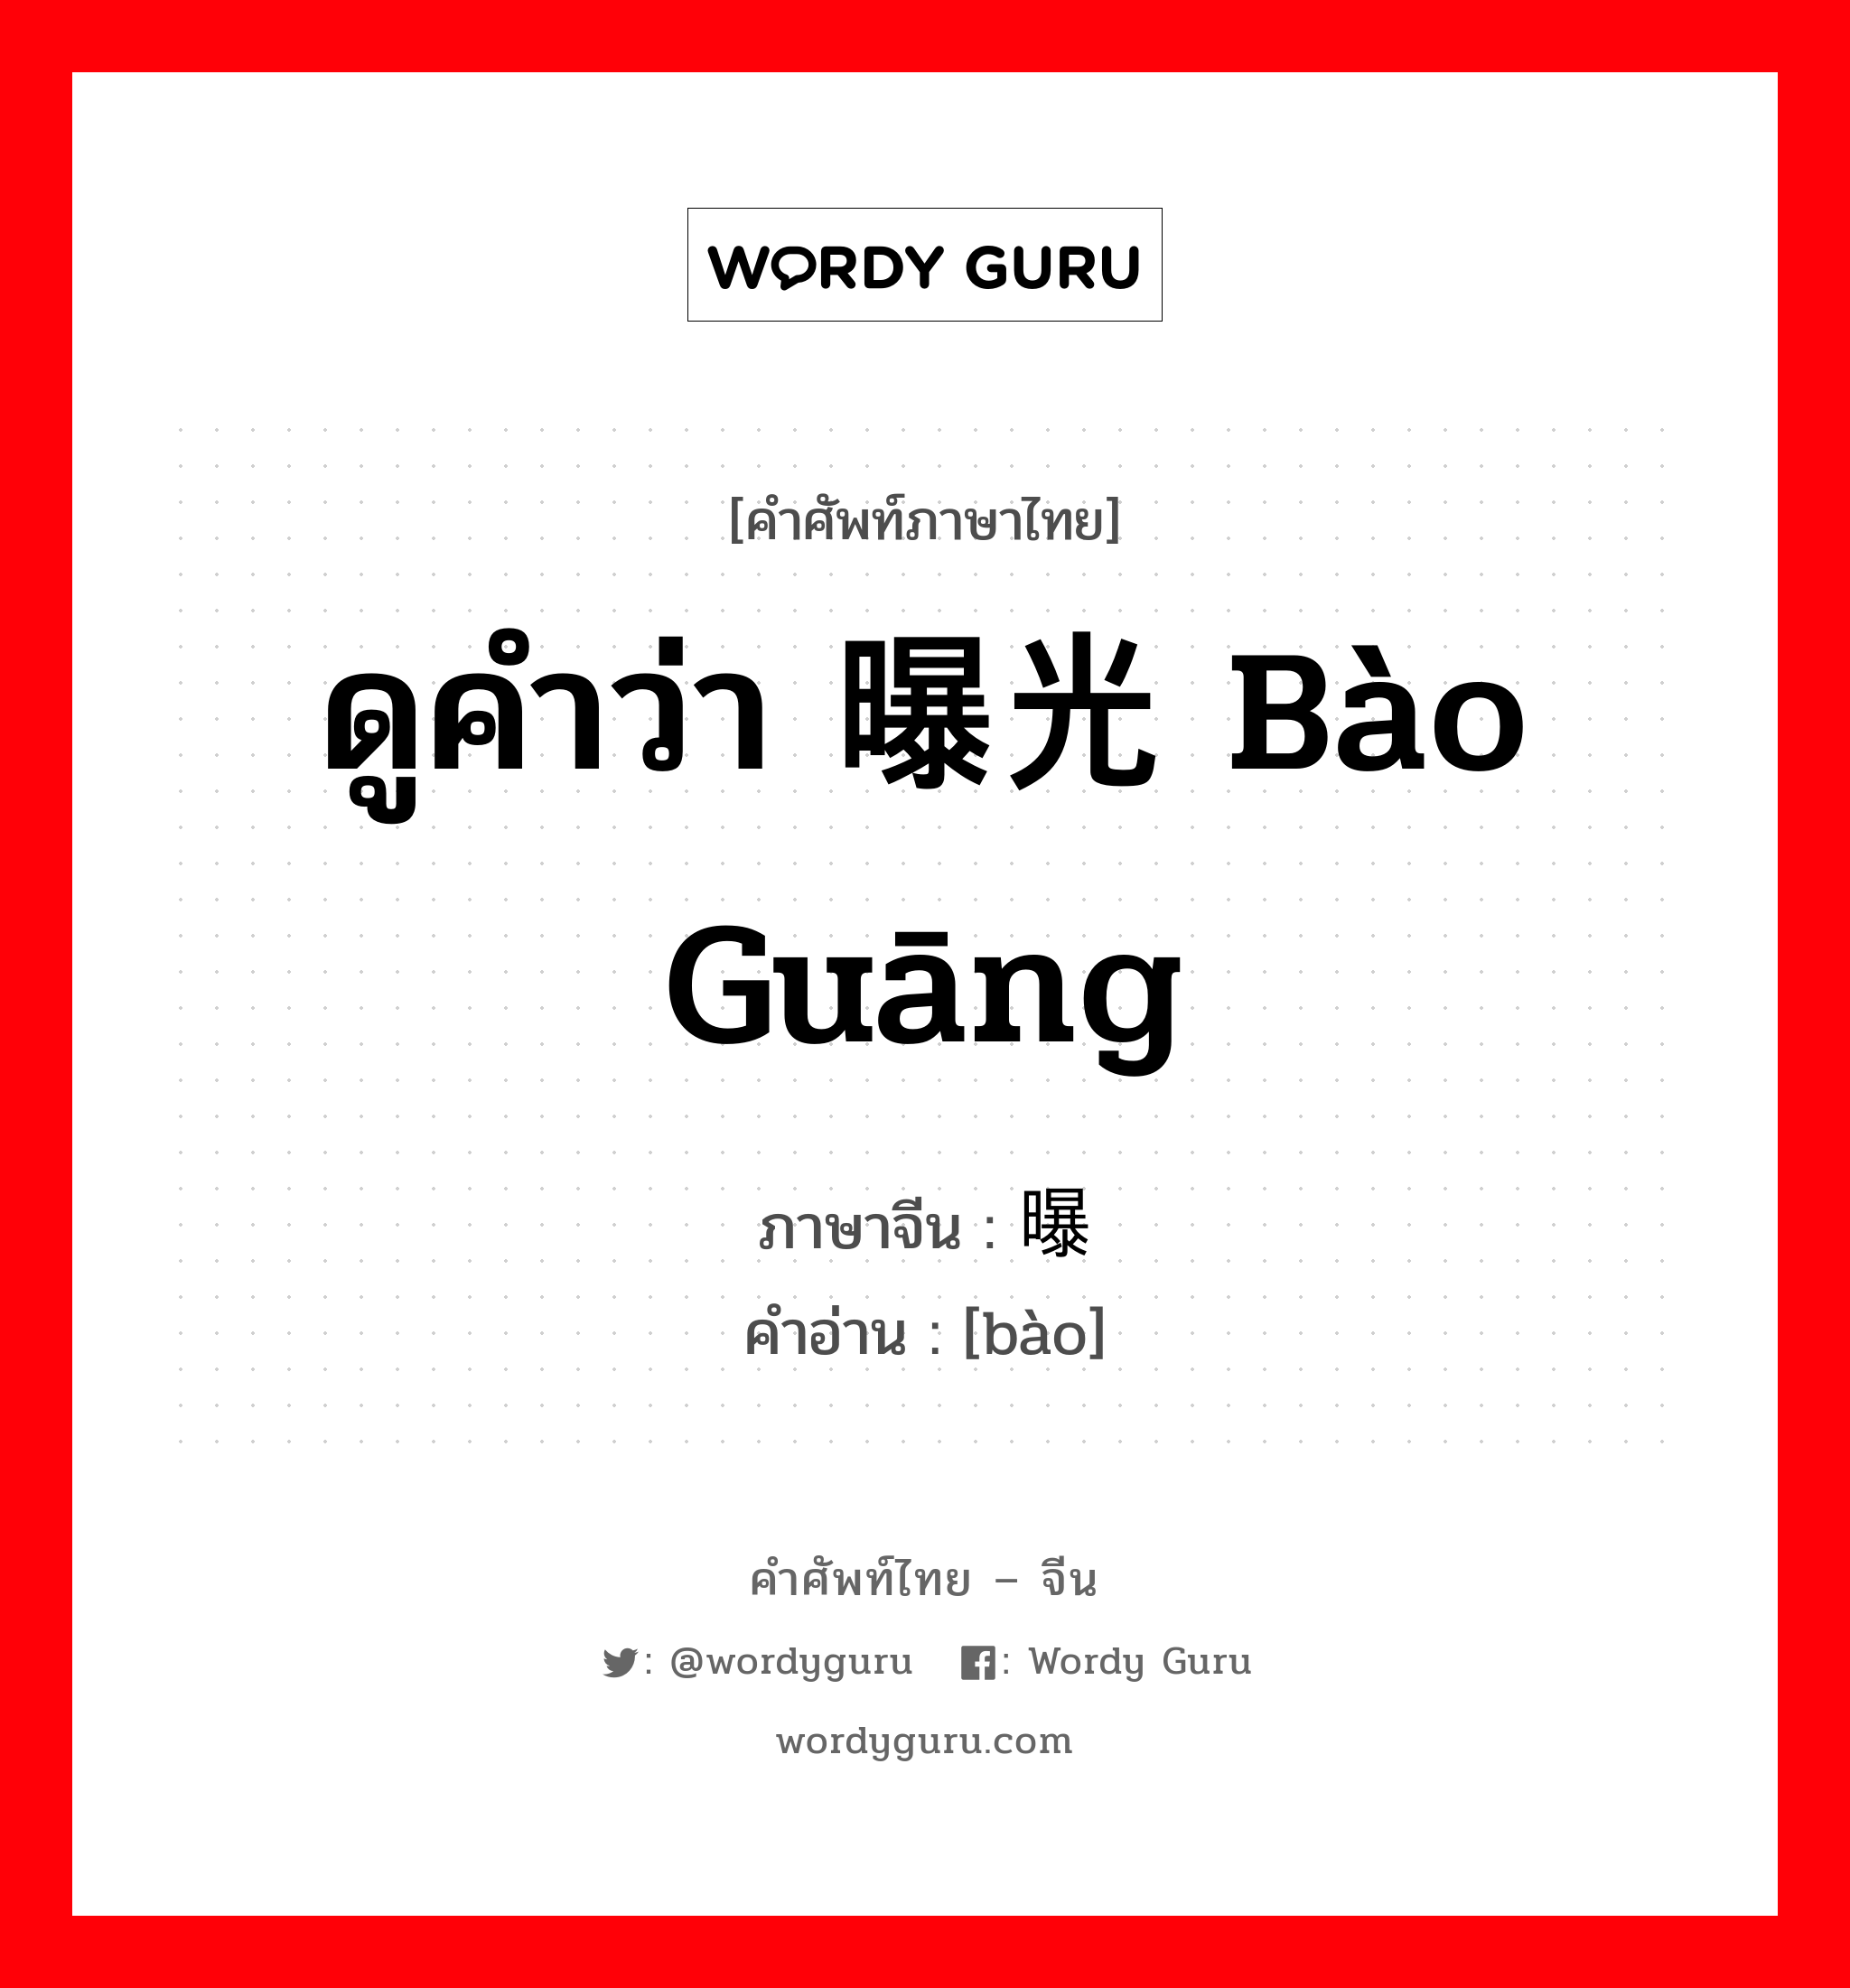 ดูคำว่า 曝光 bào guāng ภาษาจีนคืออะไร, คำศัพท์ภาษาไทย - จีน ดูคำว่า 曝光 bào guāng ภาษาจีน 曝 คำอ่าน [bào]